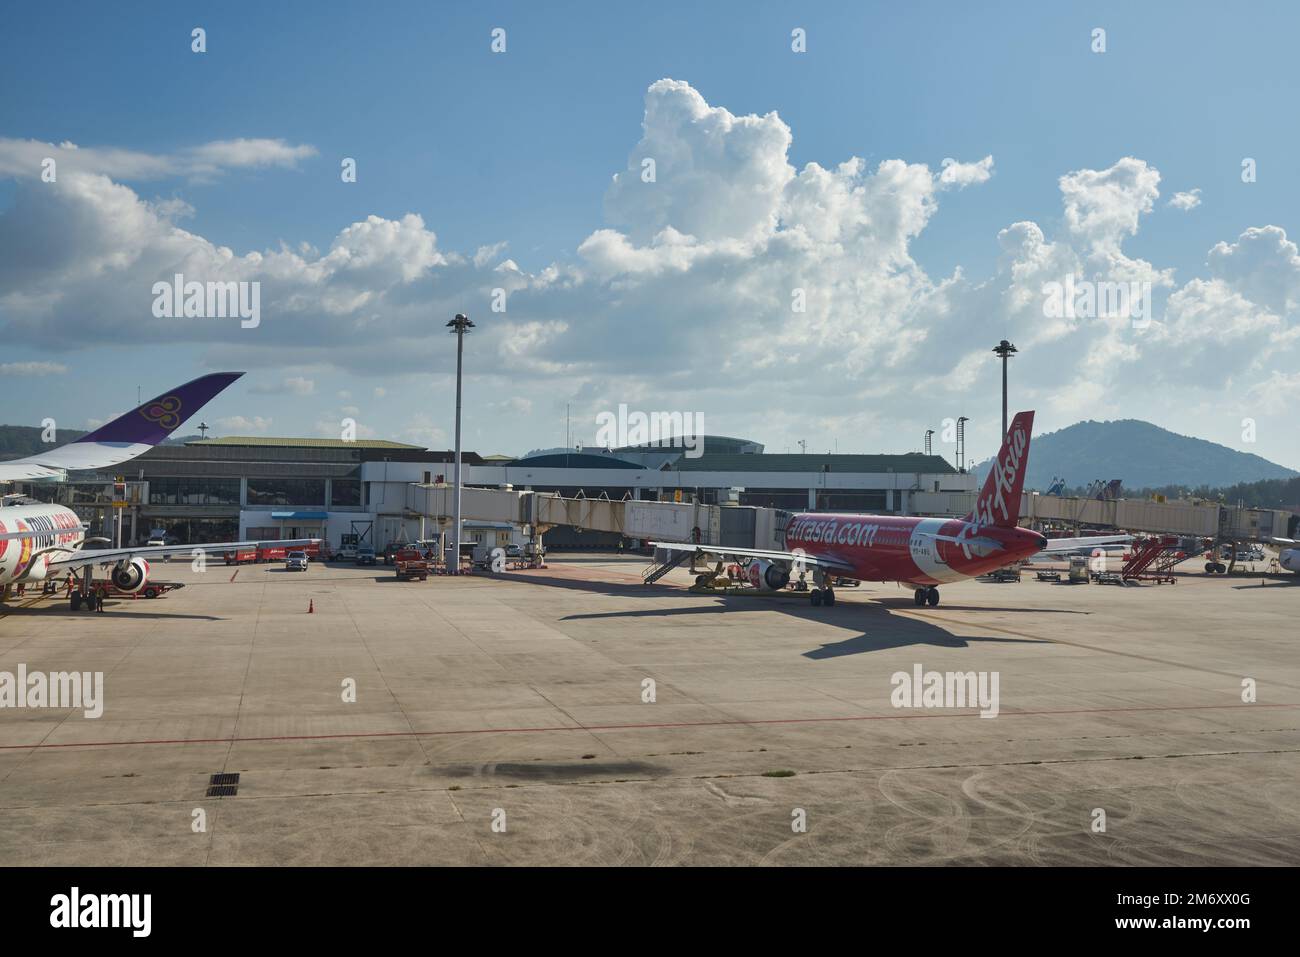 PHUKET, THAILAND - CIRCA JANUAR 2020: Internationaler Flughafen Phuket aus Sicht des Thai Airways Airbus A350 am Tag. Stockfoto